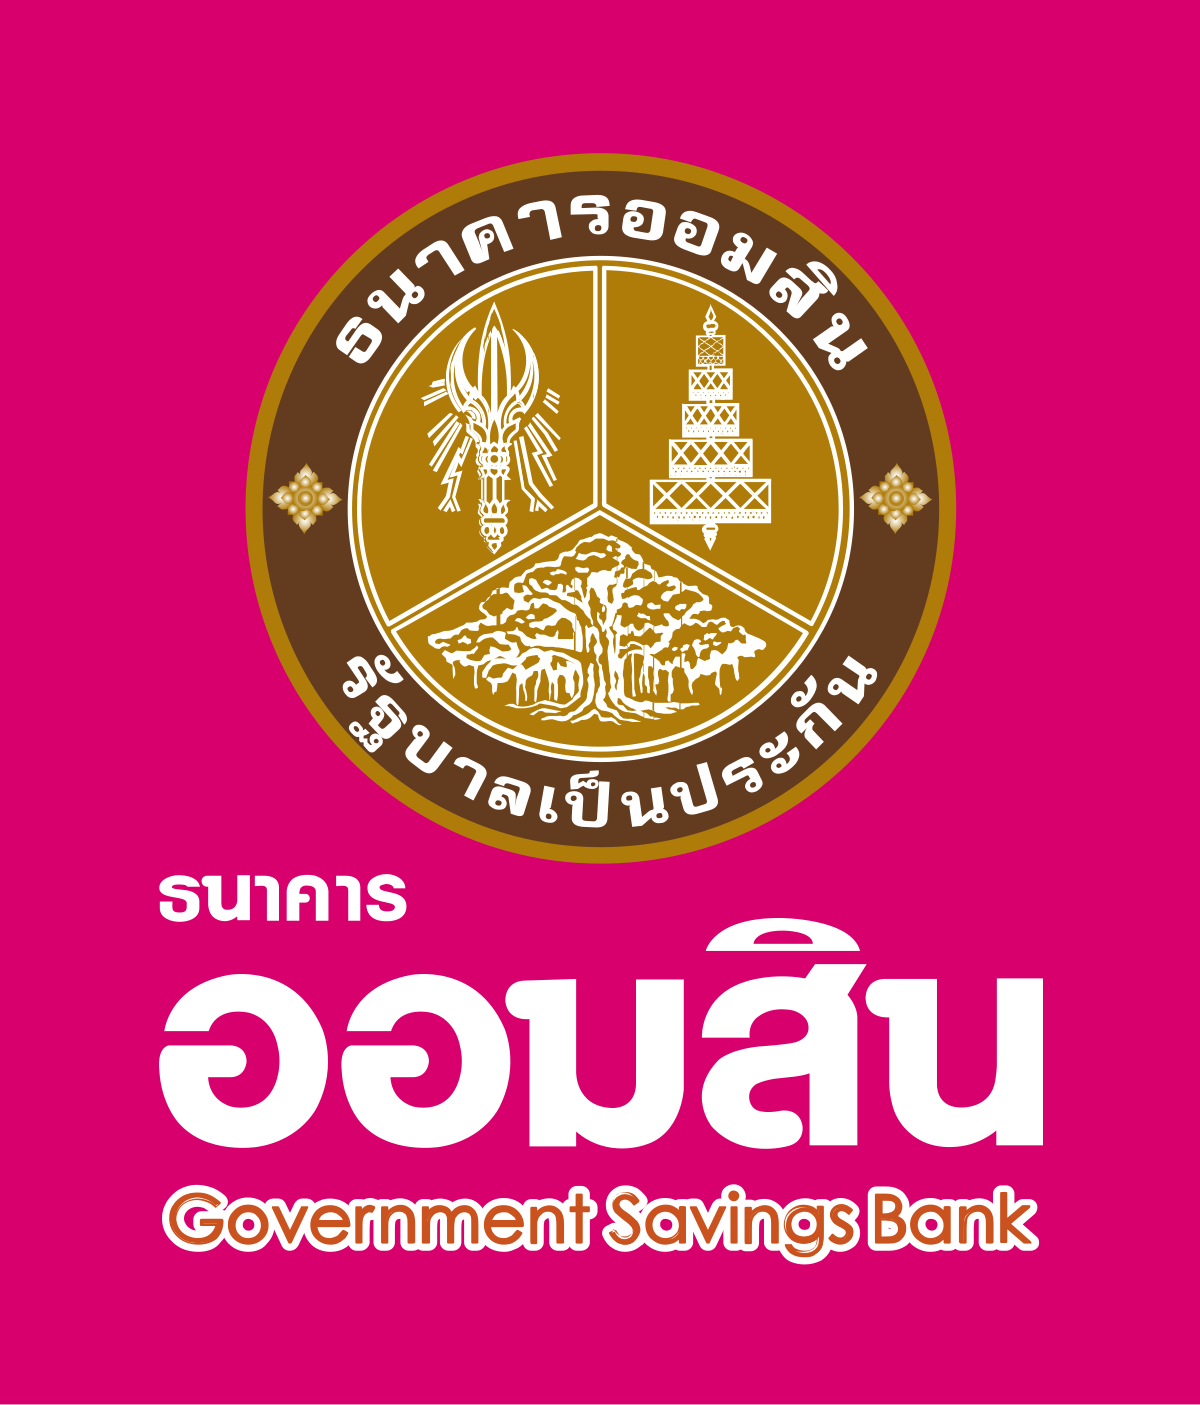 Government Savings Bank Brand Logo